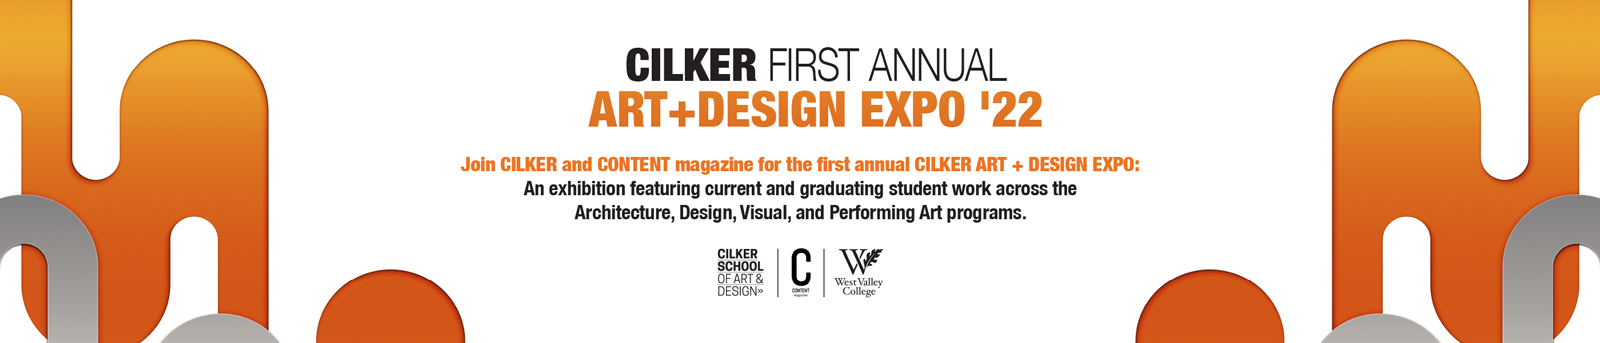 Cilker Expo event hero